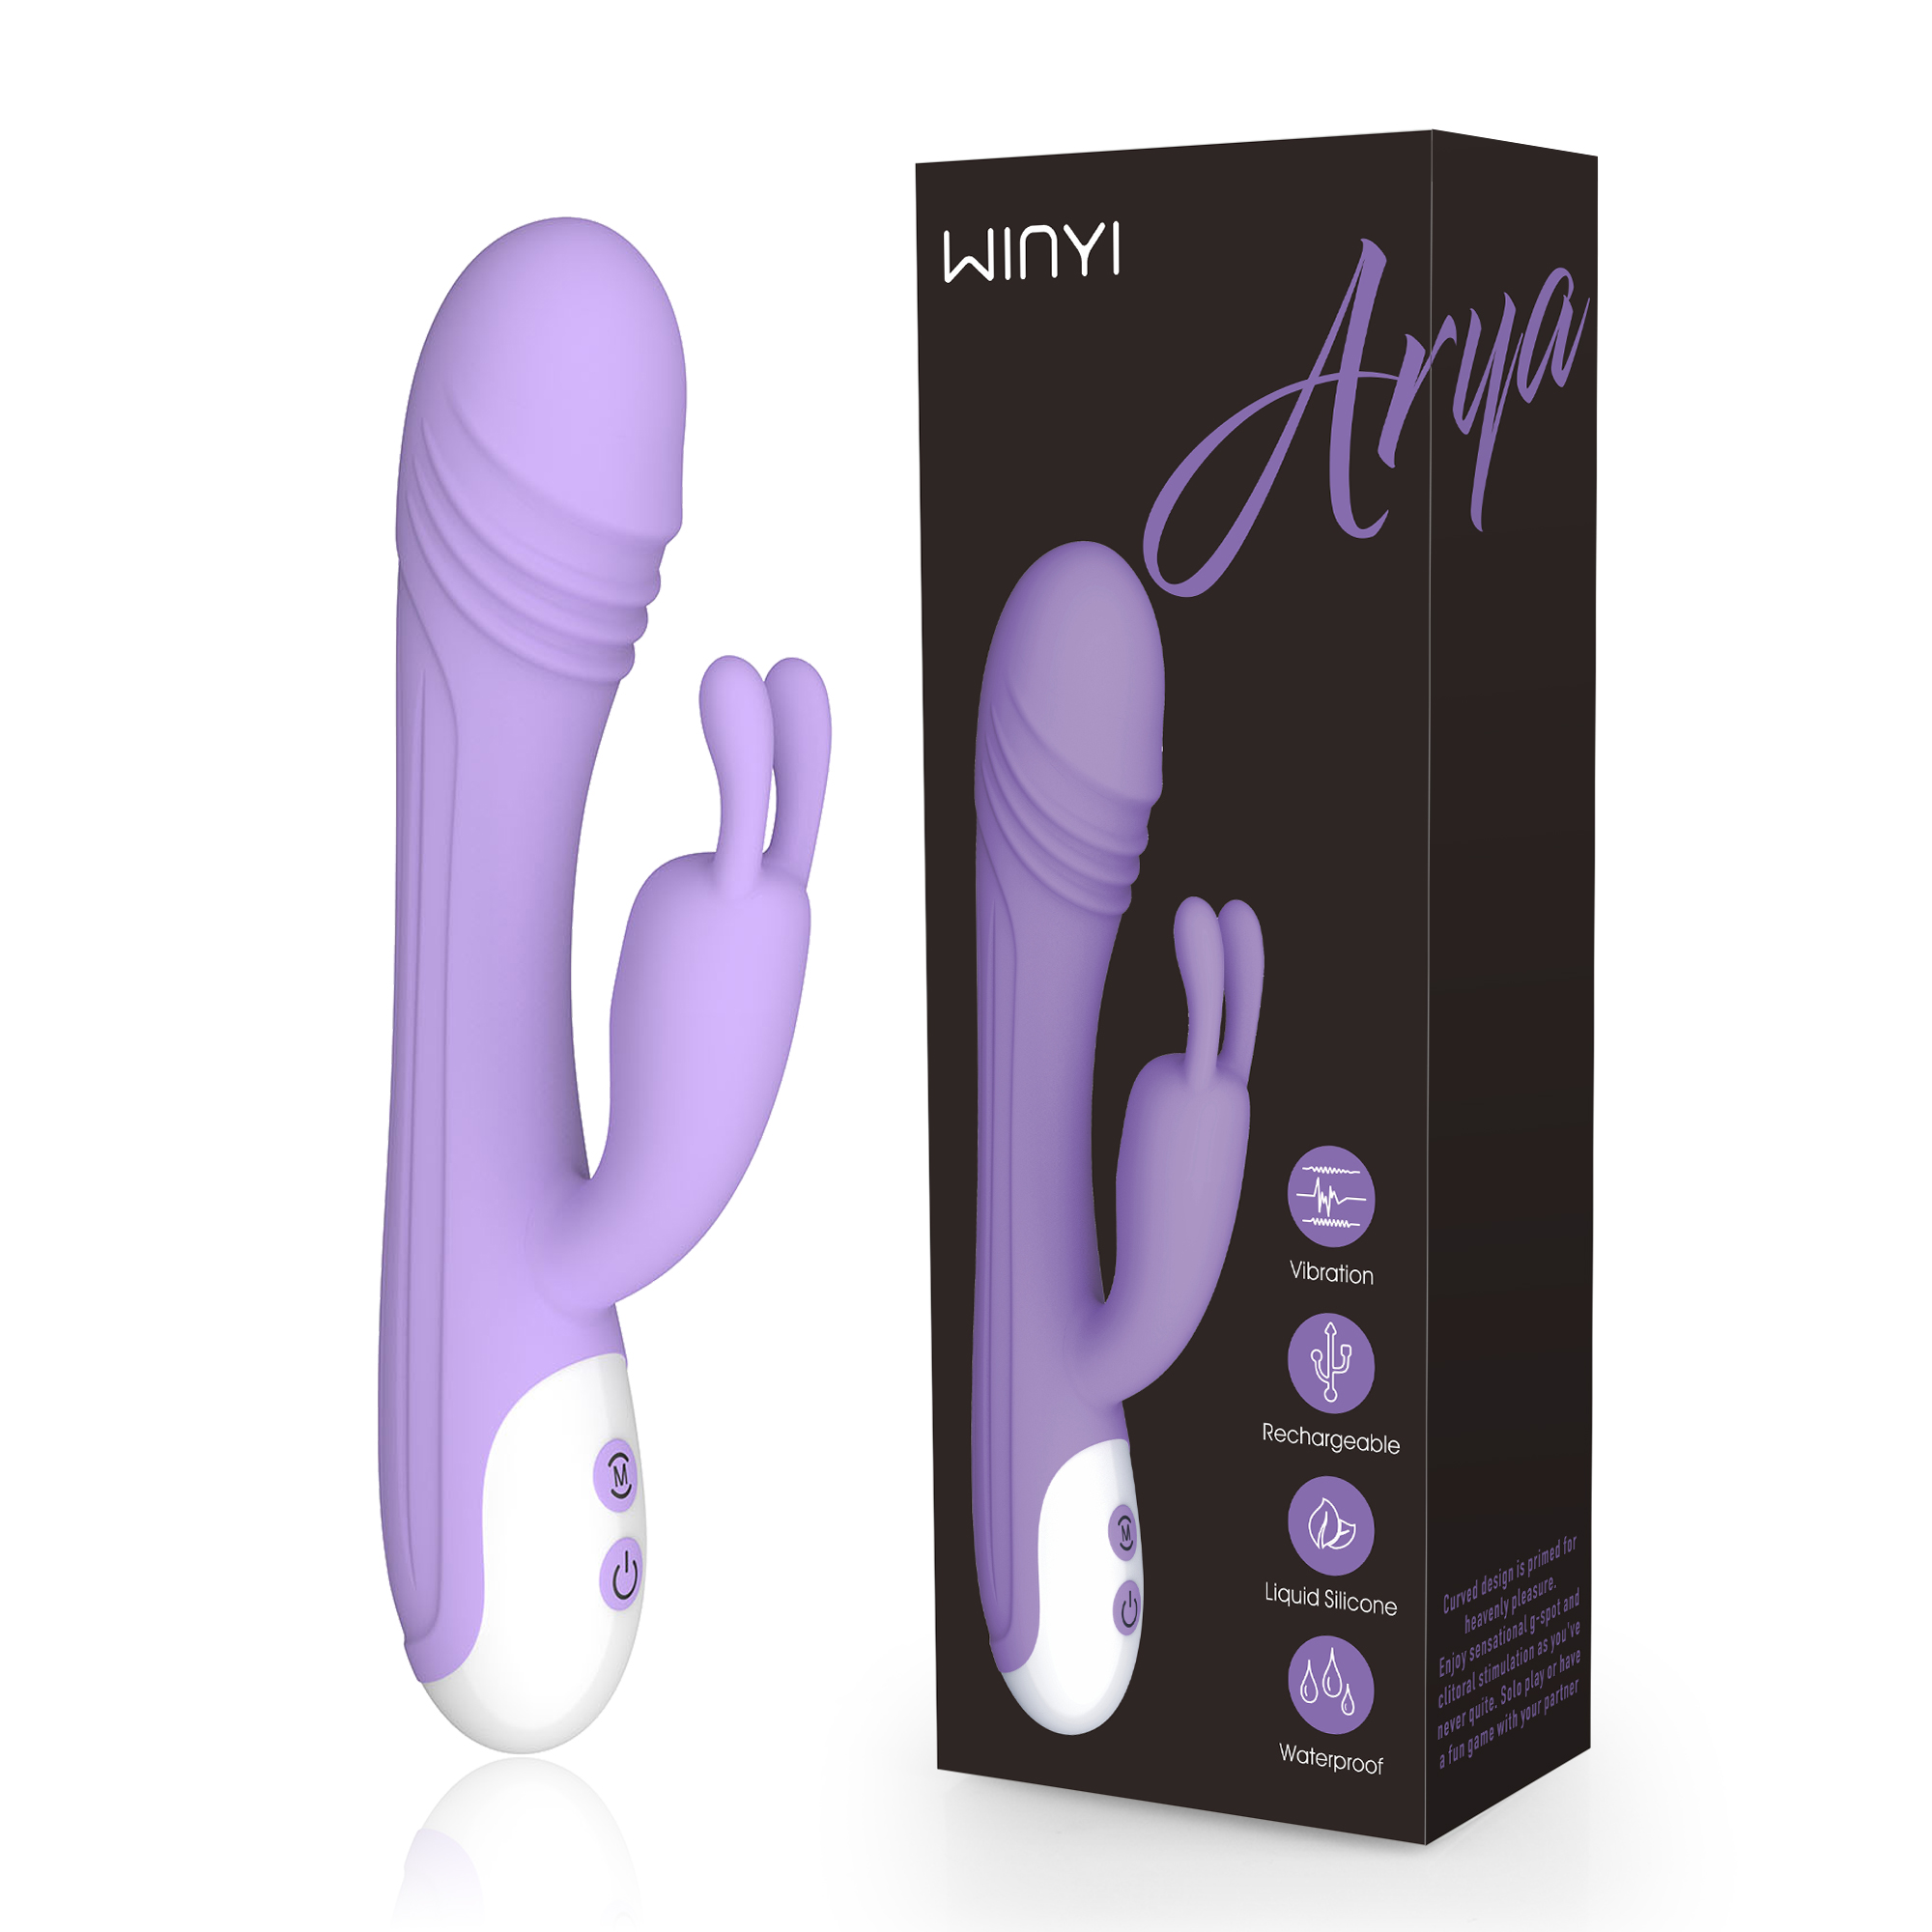 WY0113 ARYA-rabbit vibrator sex toy-szwinyi.com